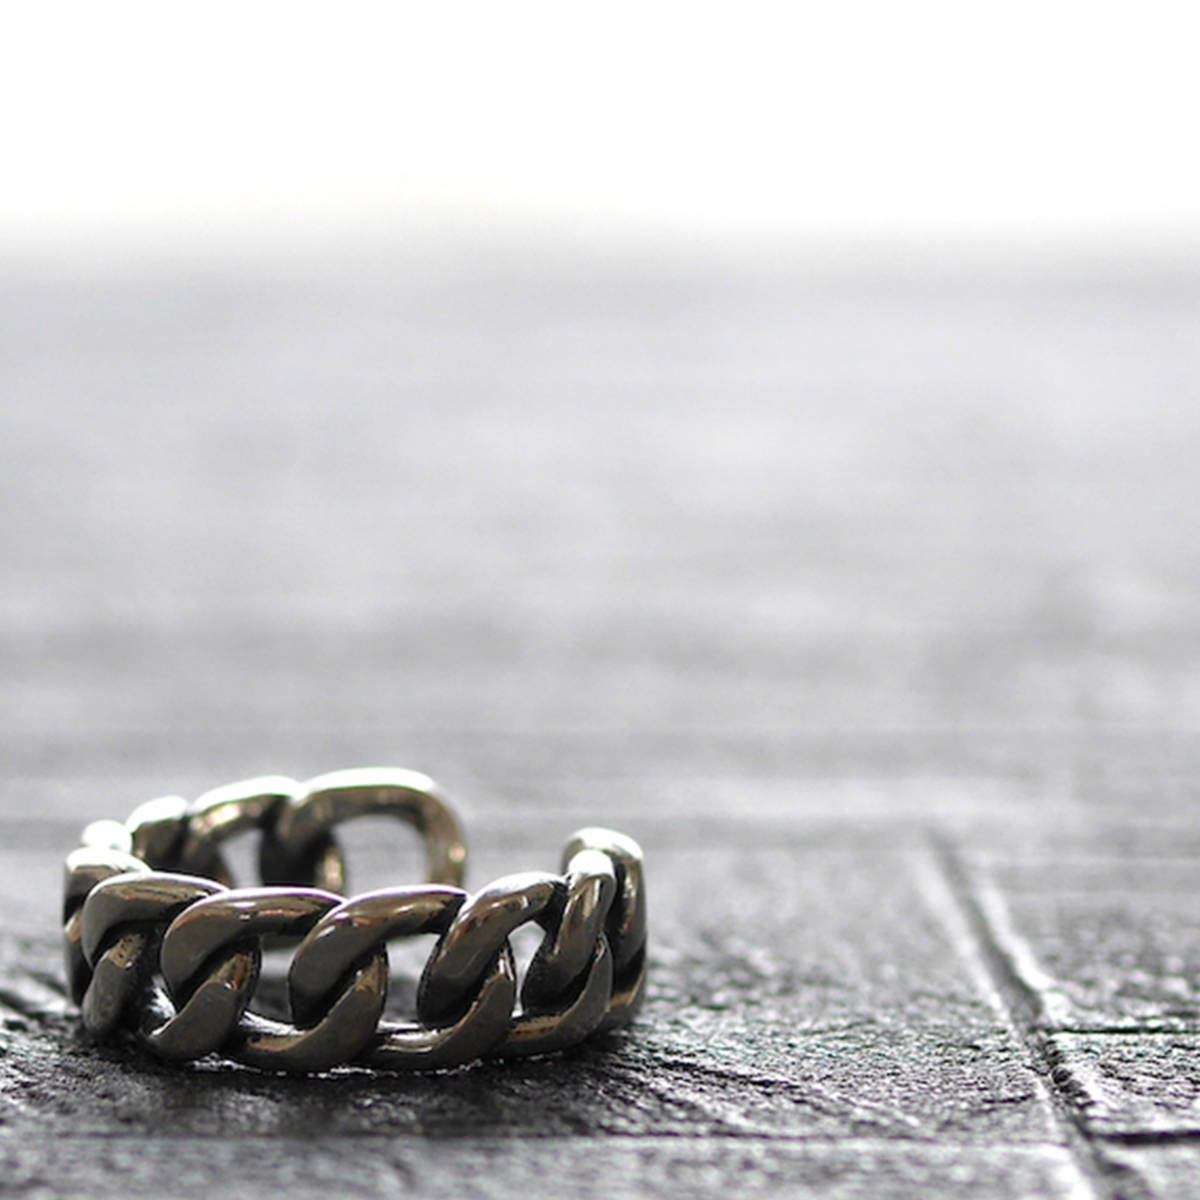 [ новый товар ]D-2 серебряный 925 кольцо размер регулировка возможность пара кольцо накладывающийся установка простой свободный размер мужской женский SILVER 12/21